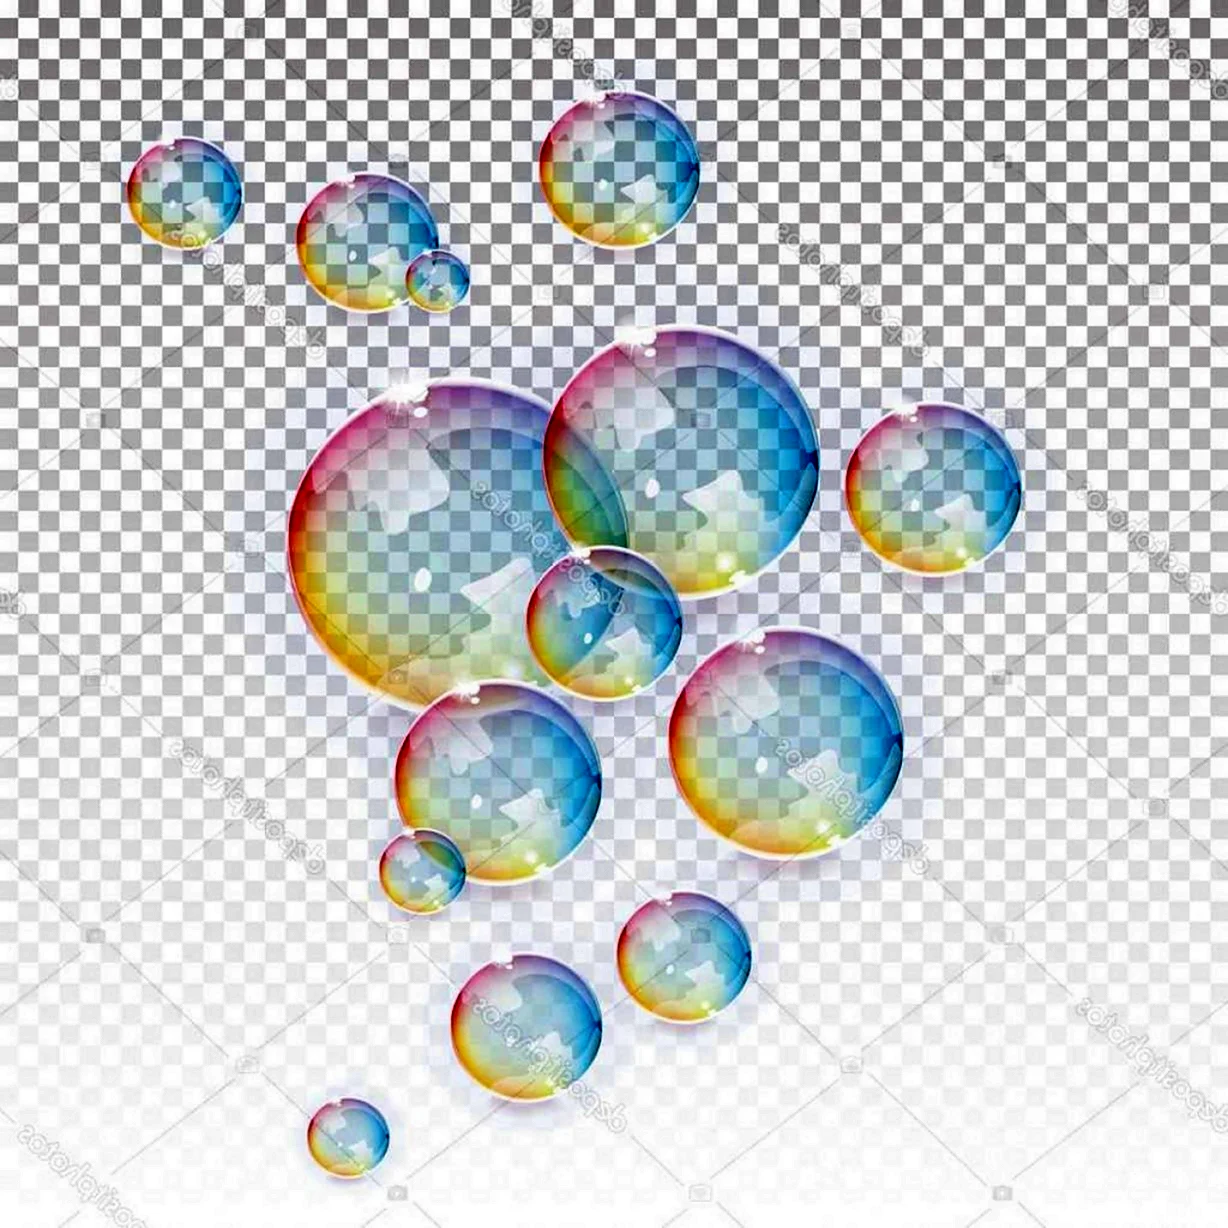 Цветной мыльный пузырь на прозрачном фоне